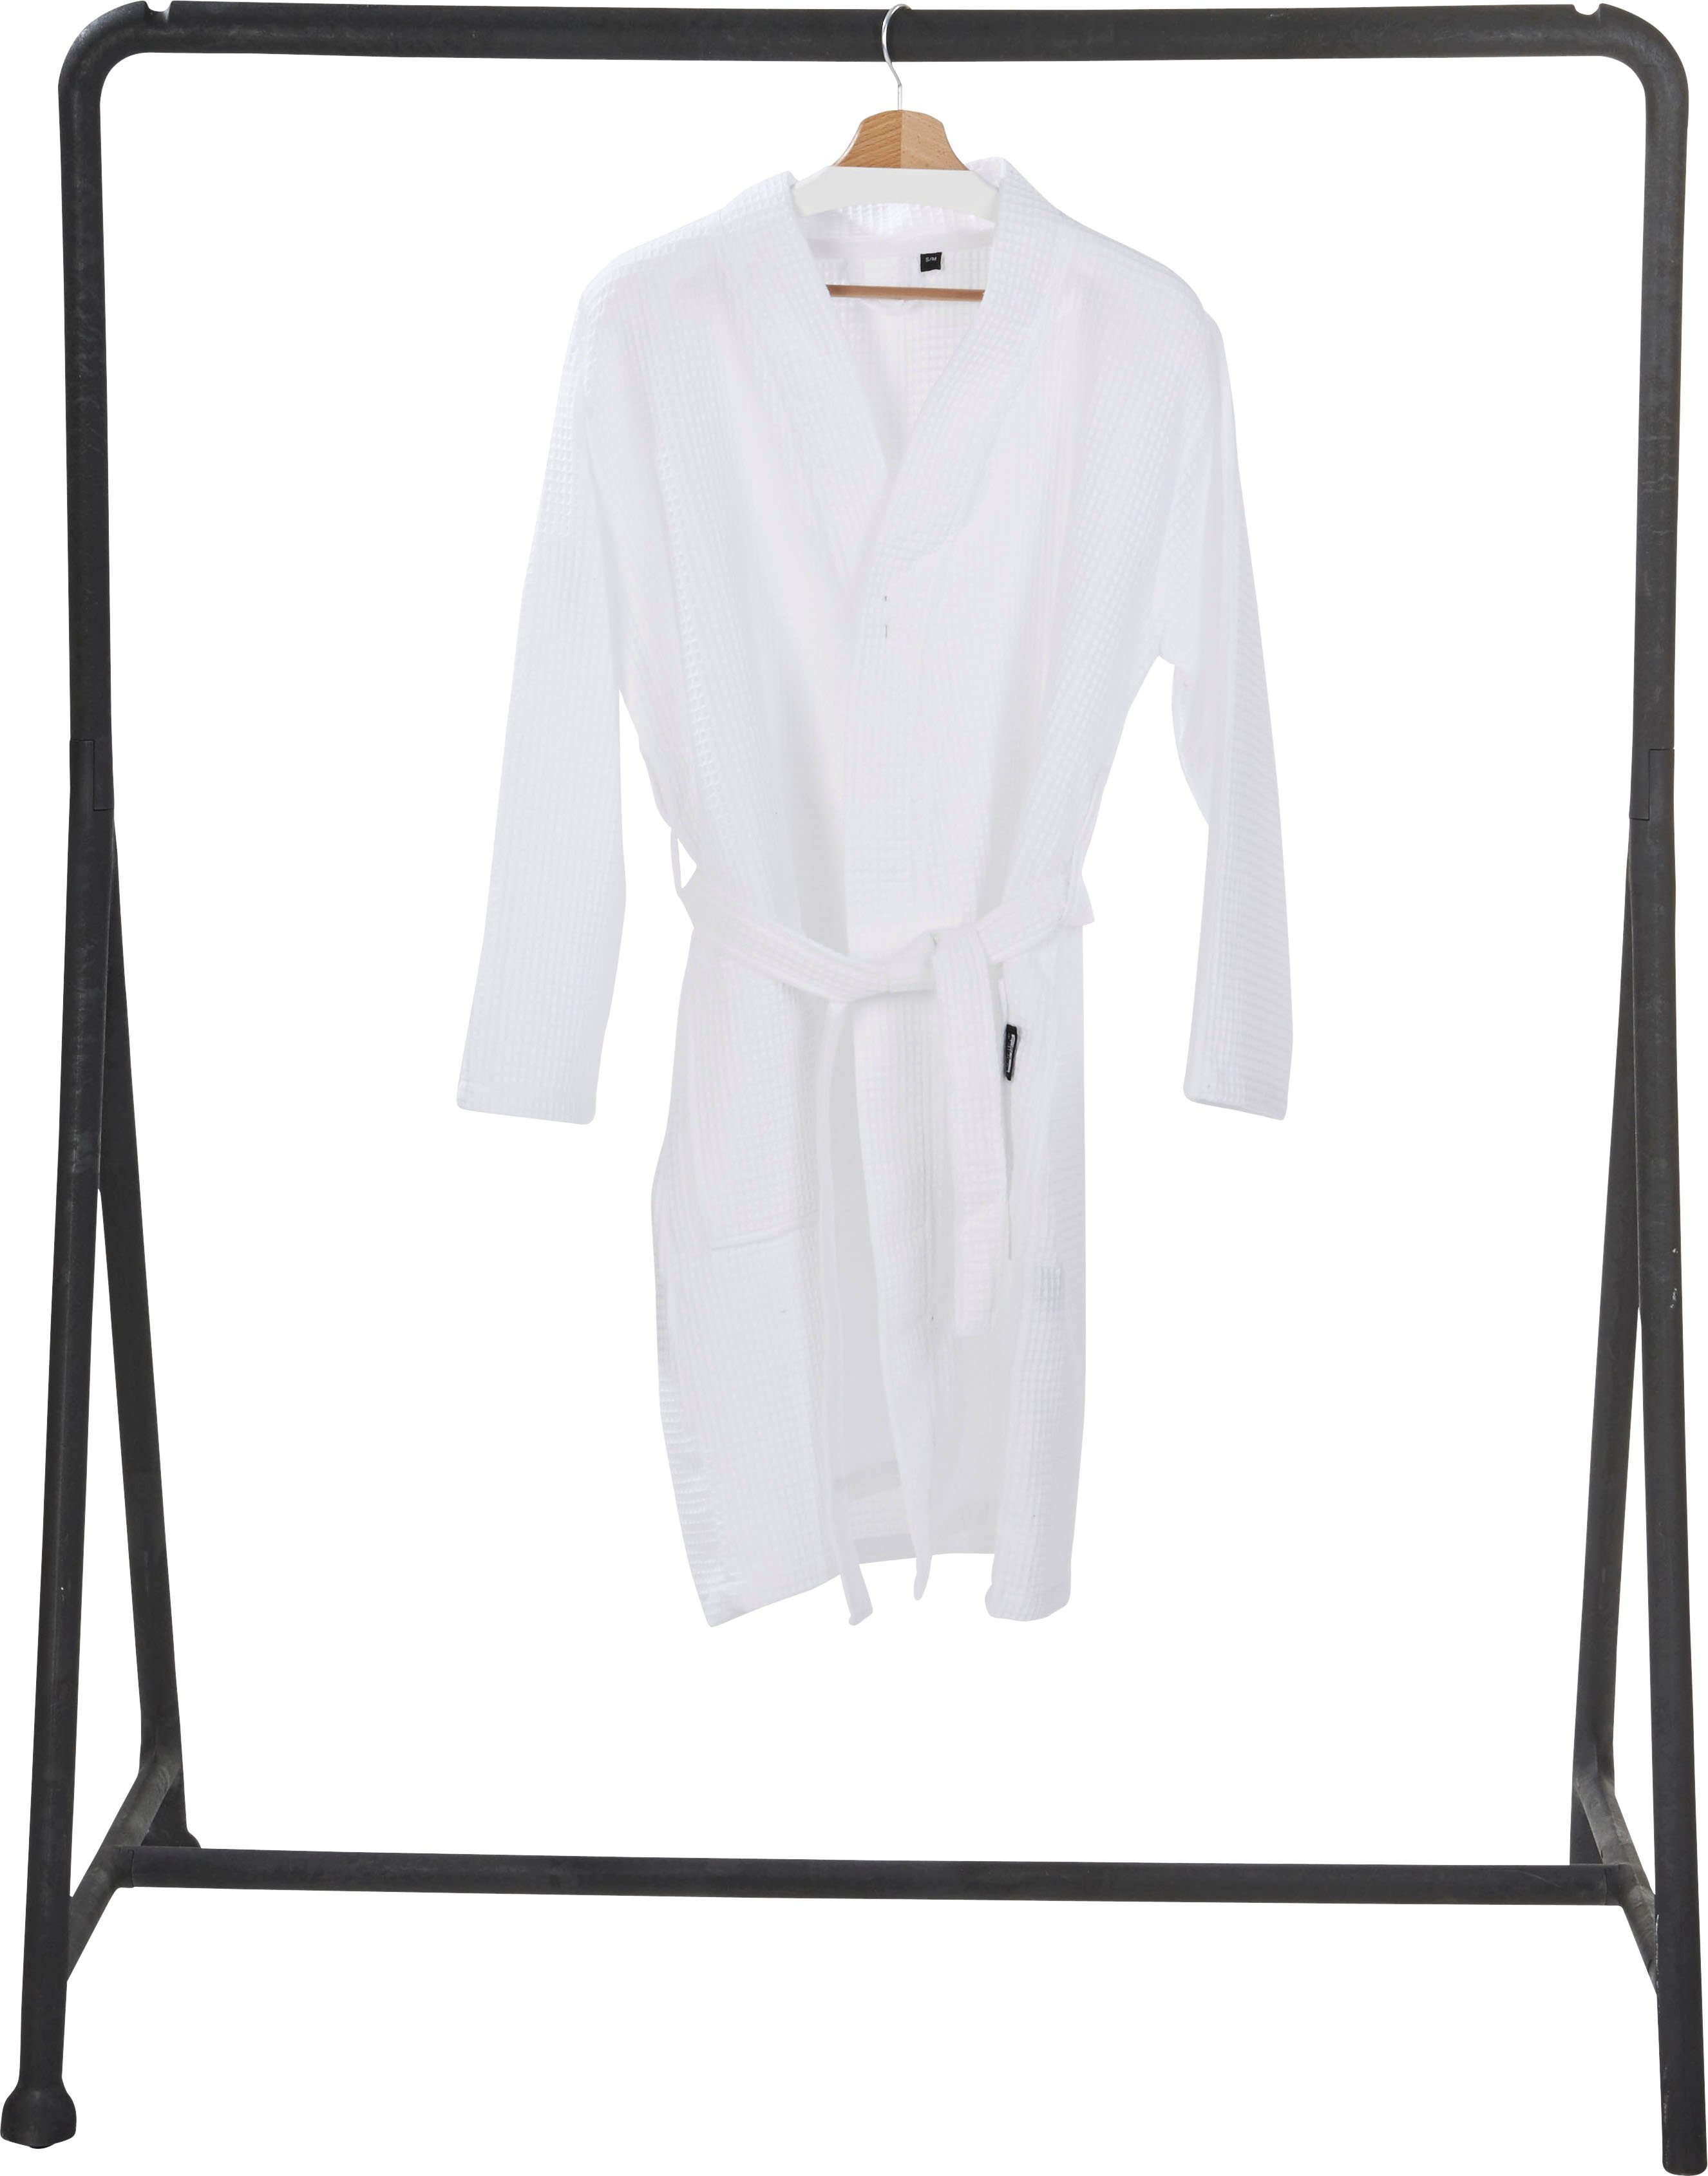 außergewöhnlich done.® Damenbademantel MySense, Kurzform, Piqué, mit aufgesetzten Schalkragen Taschen weiß und Waffelpiqué-Struktur